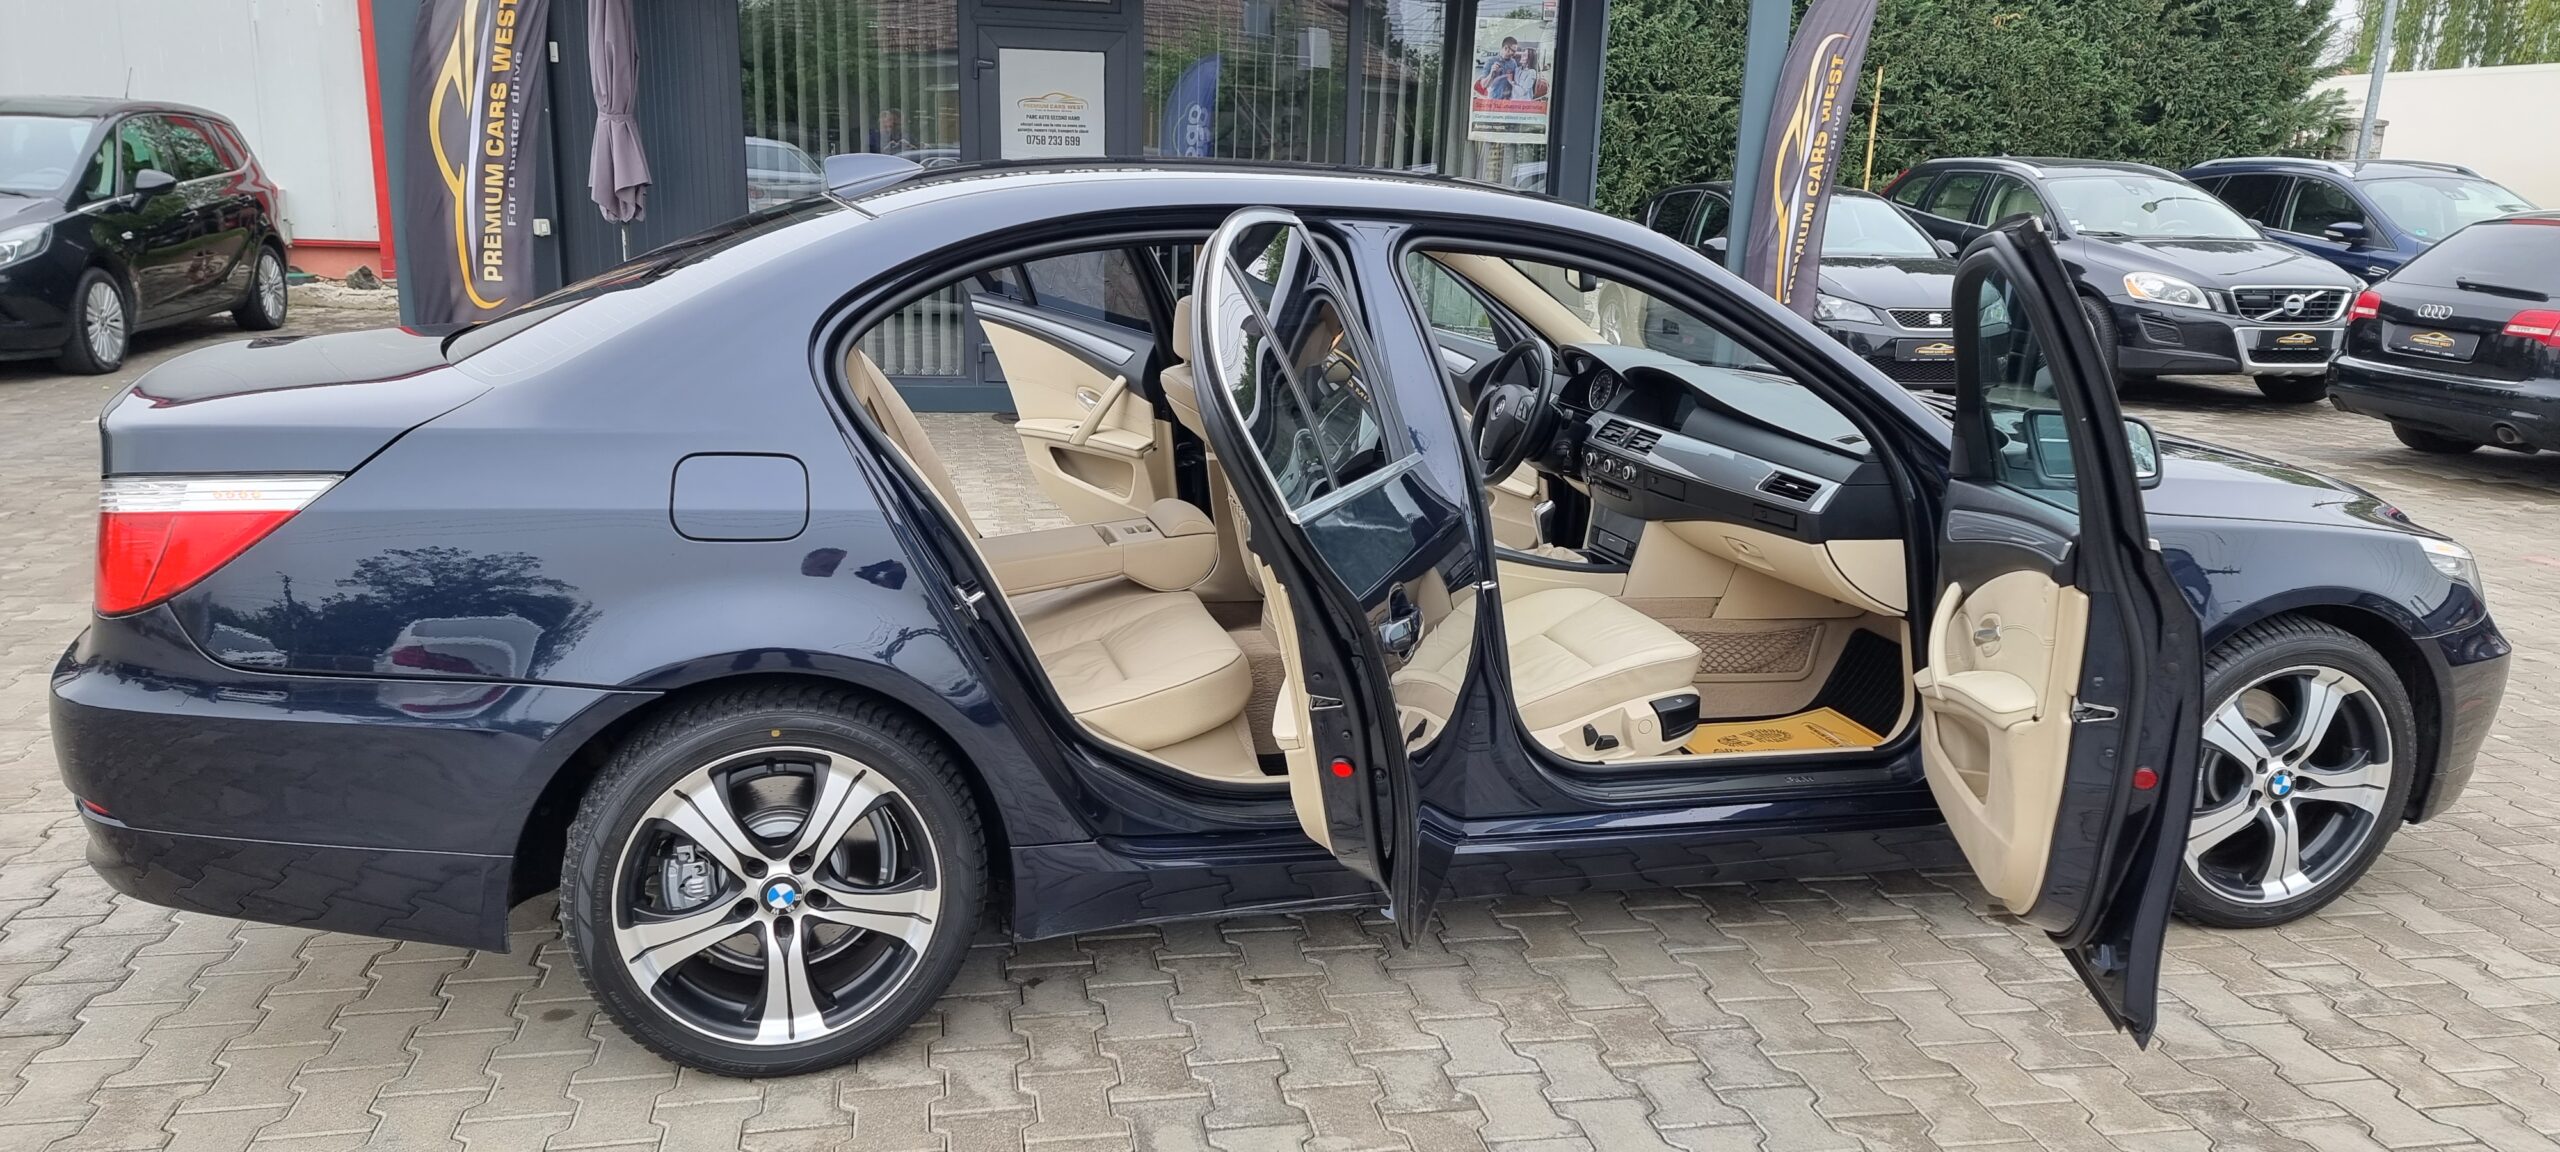 BMW 520 D – 177 CP – EURO 5